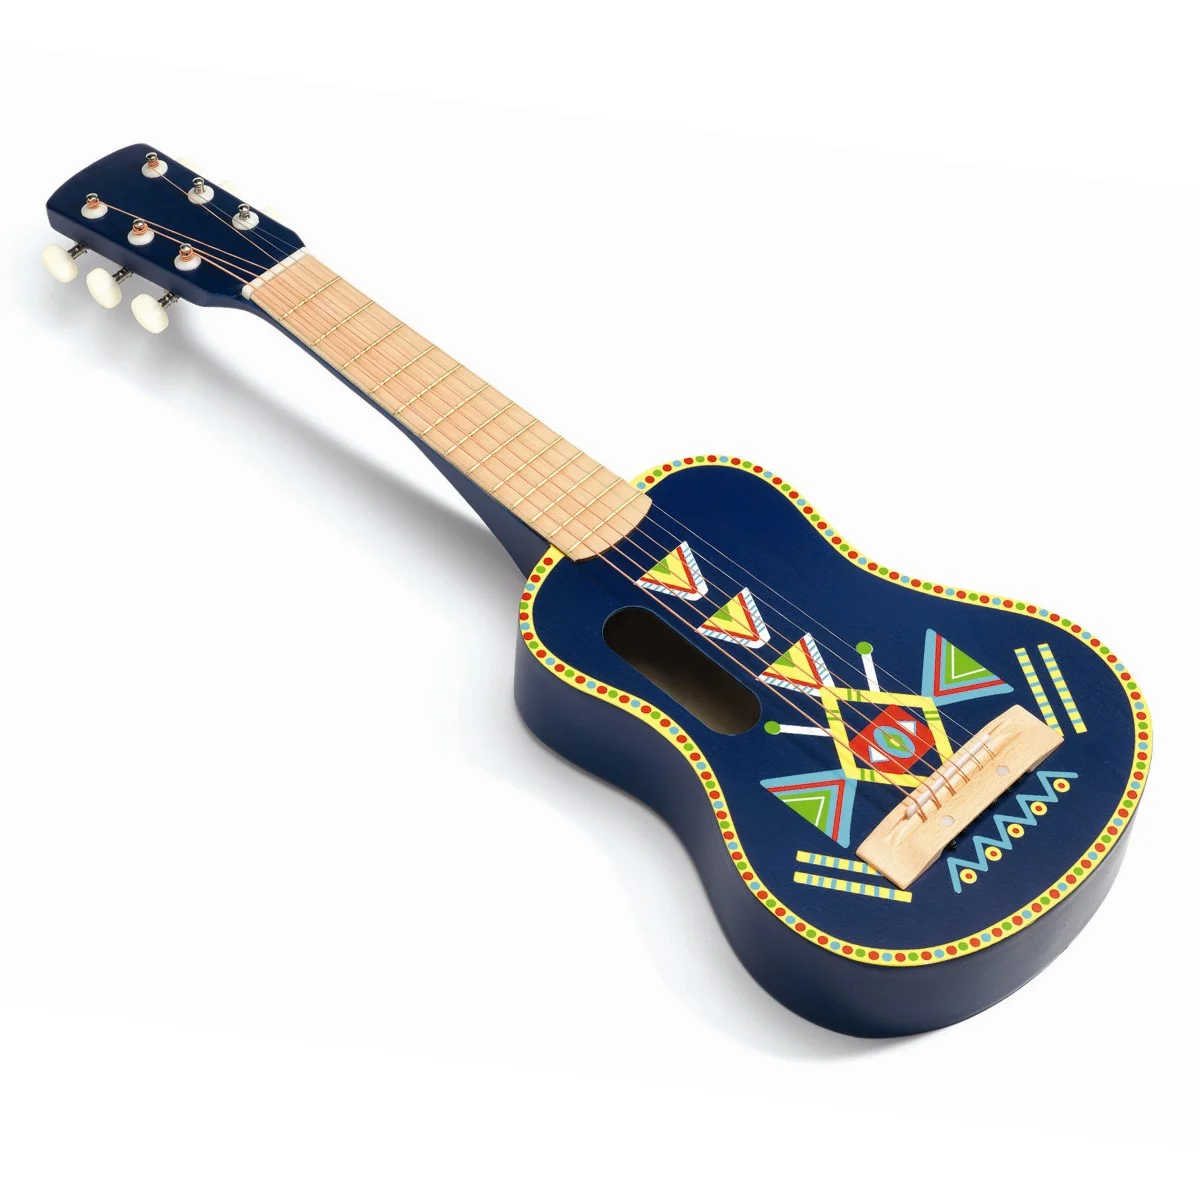 miles Ciro Picasso Djeco musikinstrument, stor guitar - Køb online til kun kr. 419.95